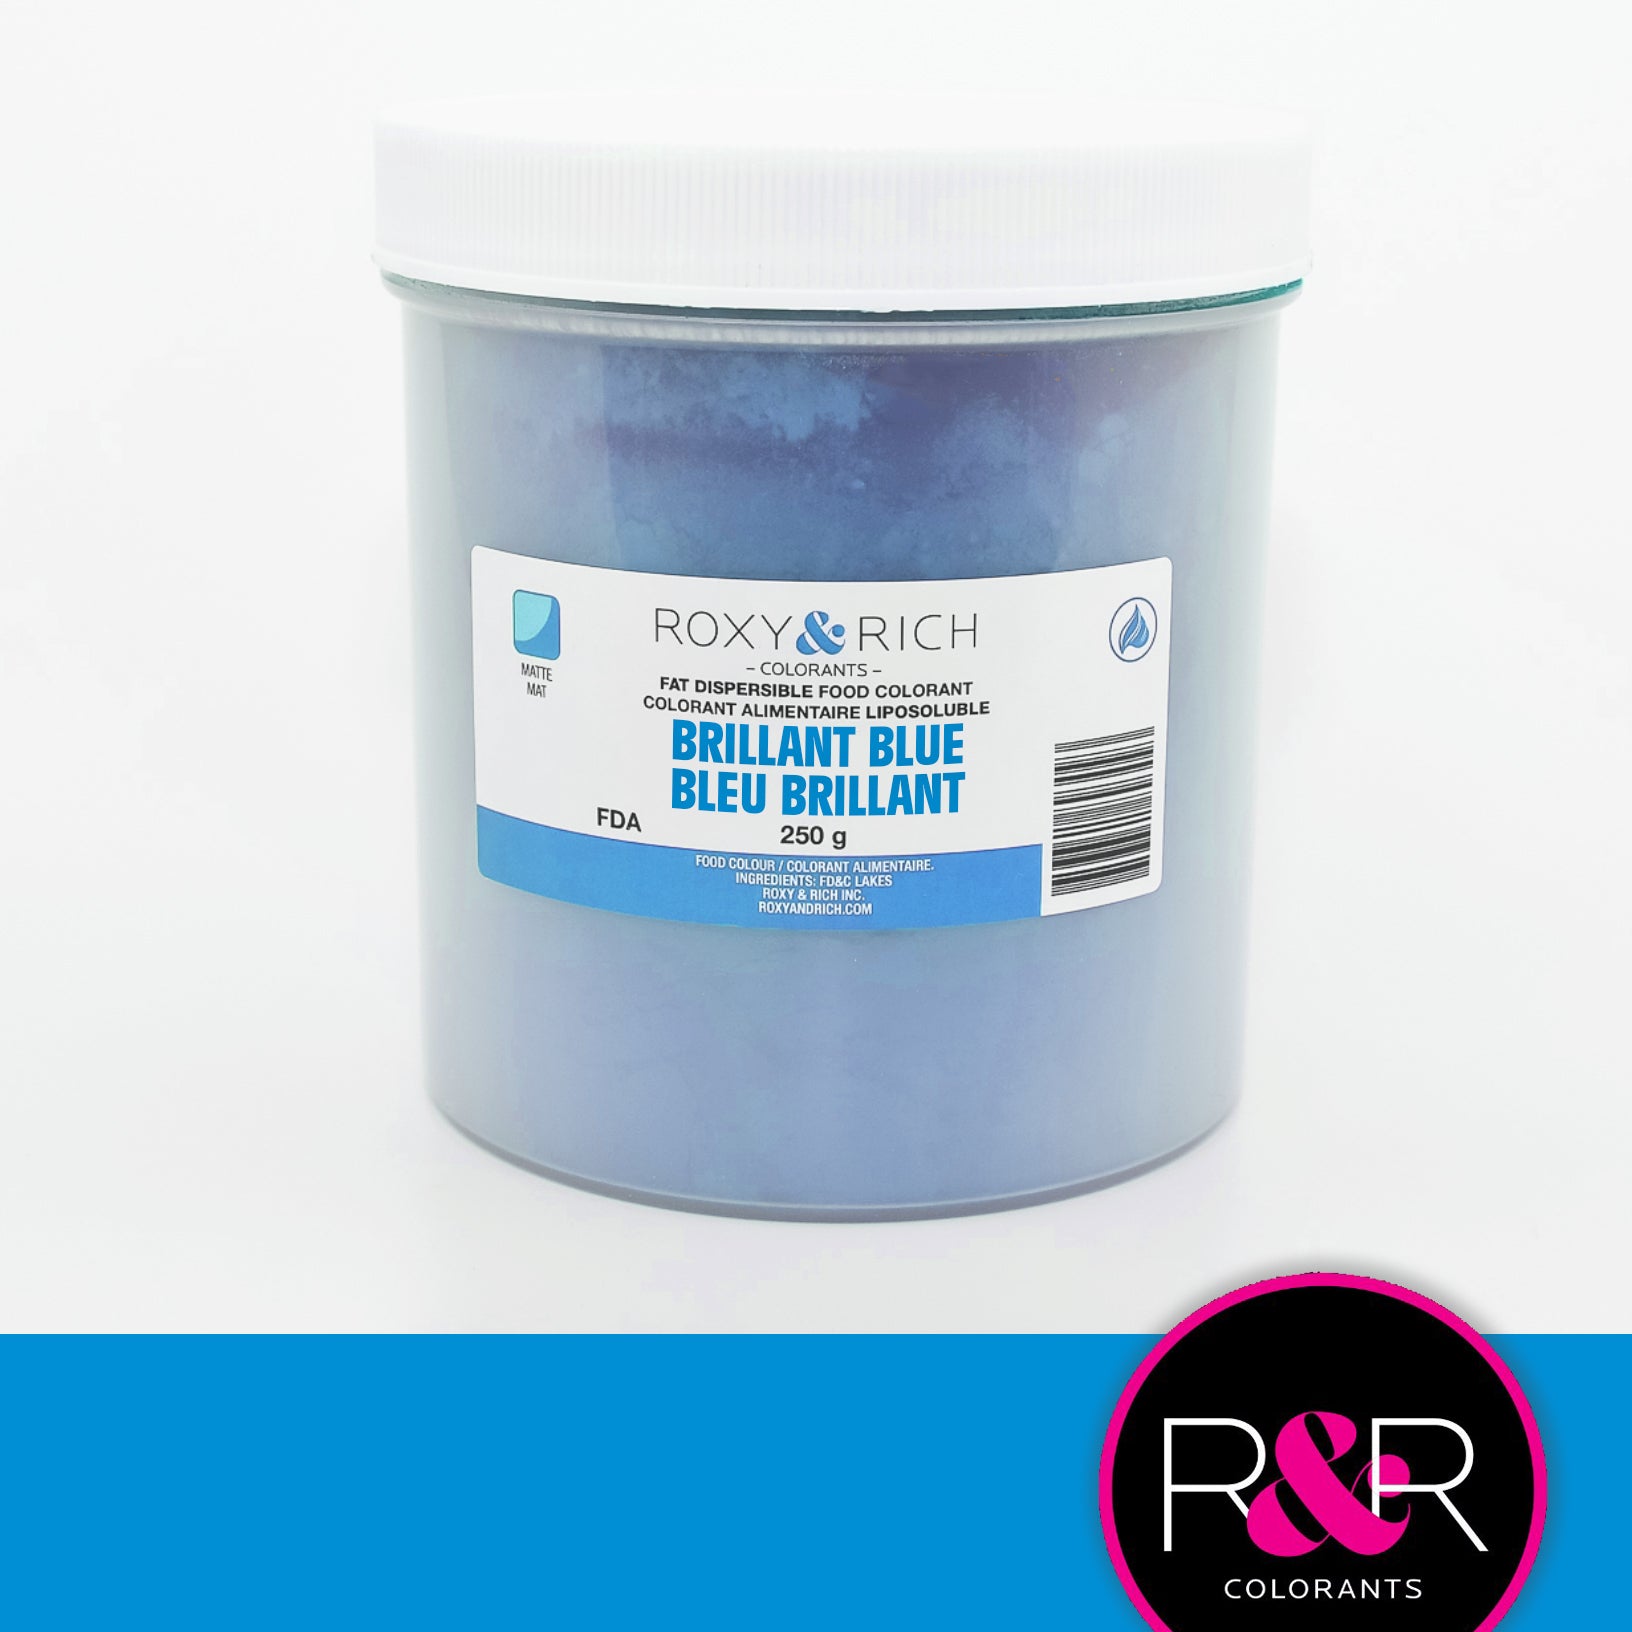 Colorant liposoluble Alimentaire 40g - effet métallique - Bleu